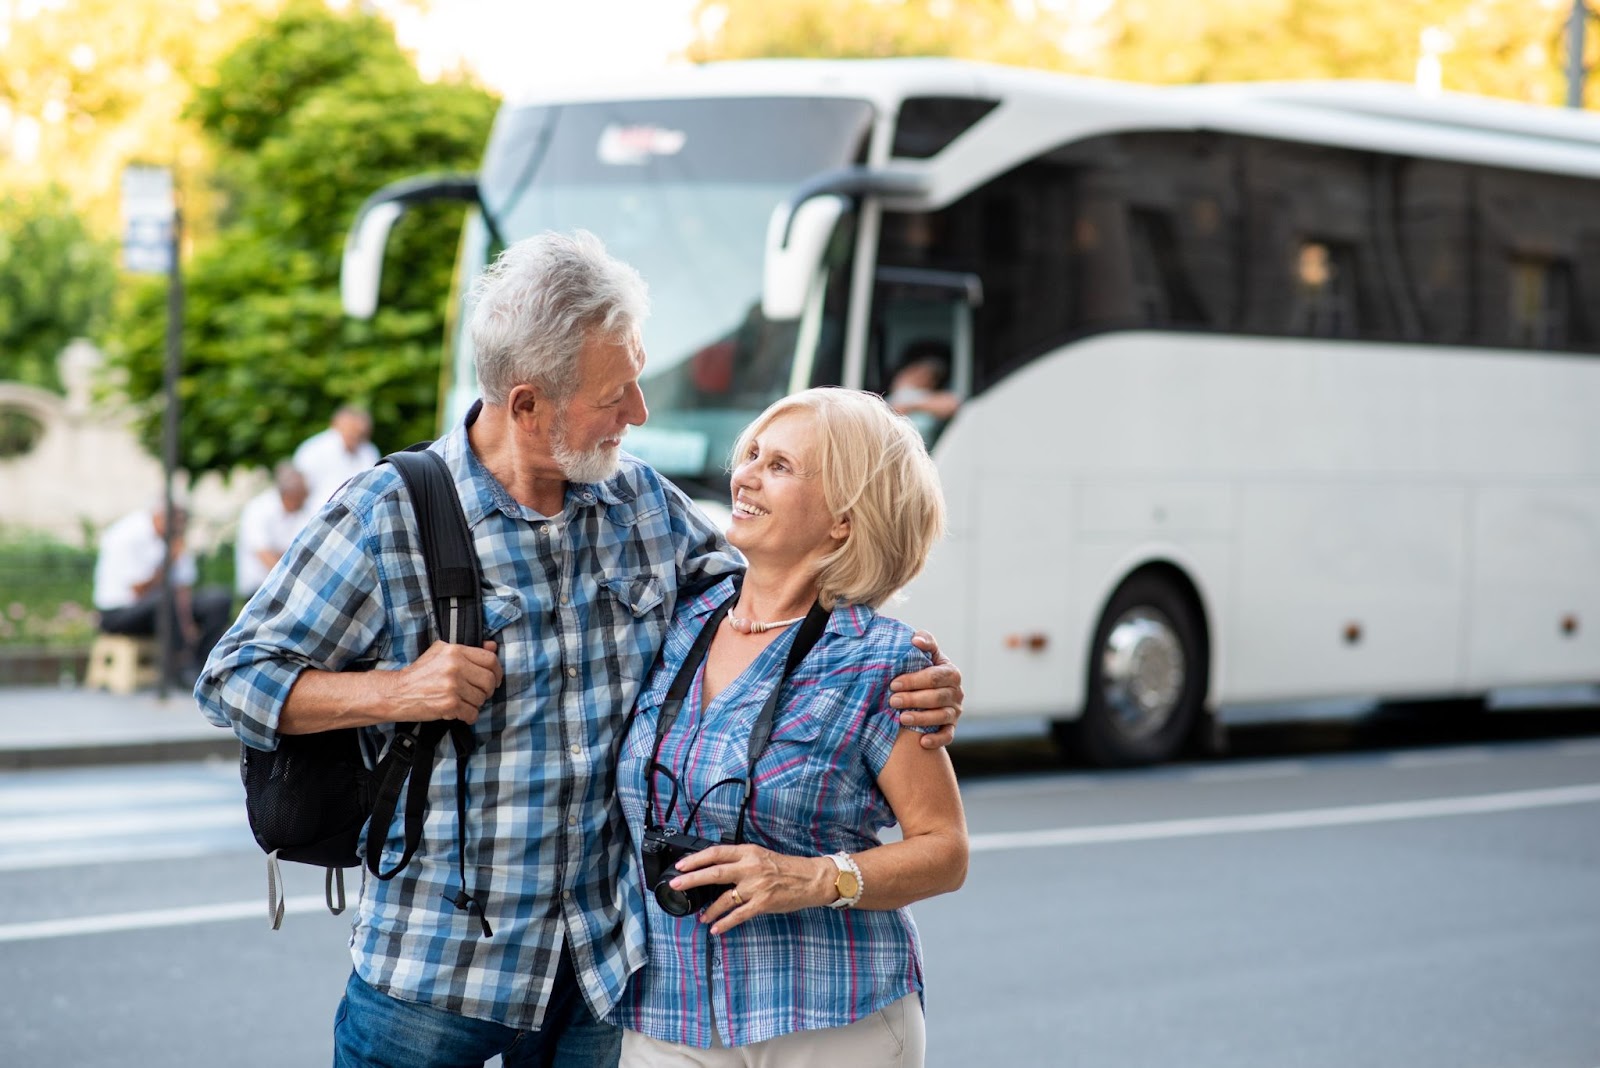 Homem e mulher que parecem ter entre 60 e 70 anos. Eles carregam mochilas e câmeras fotográficas e sorriem um para o outro, abraçados. Ao fundo, aparece um ônibus de viagem branco.